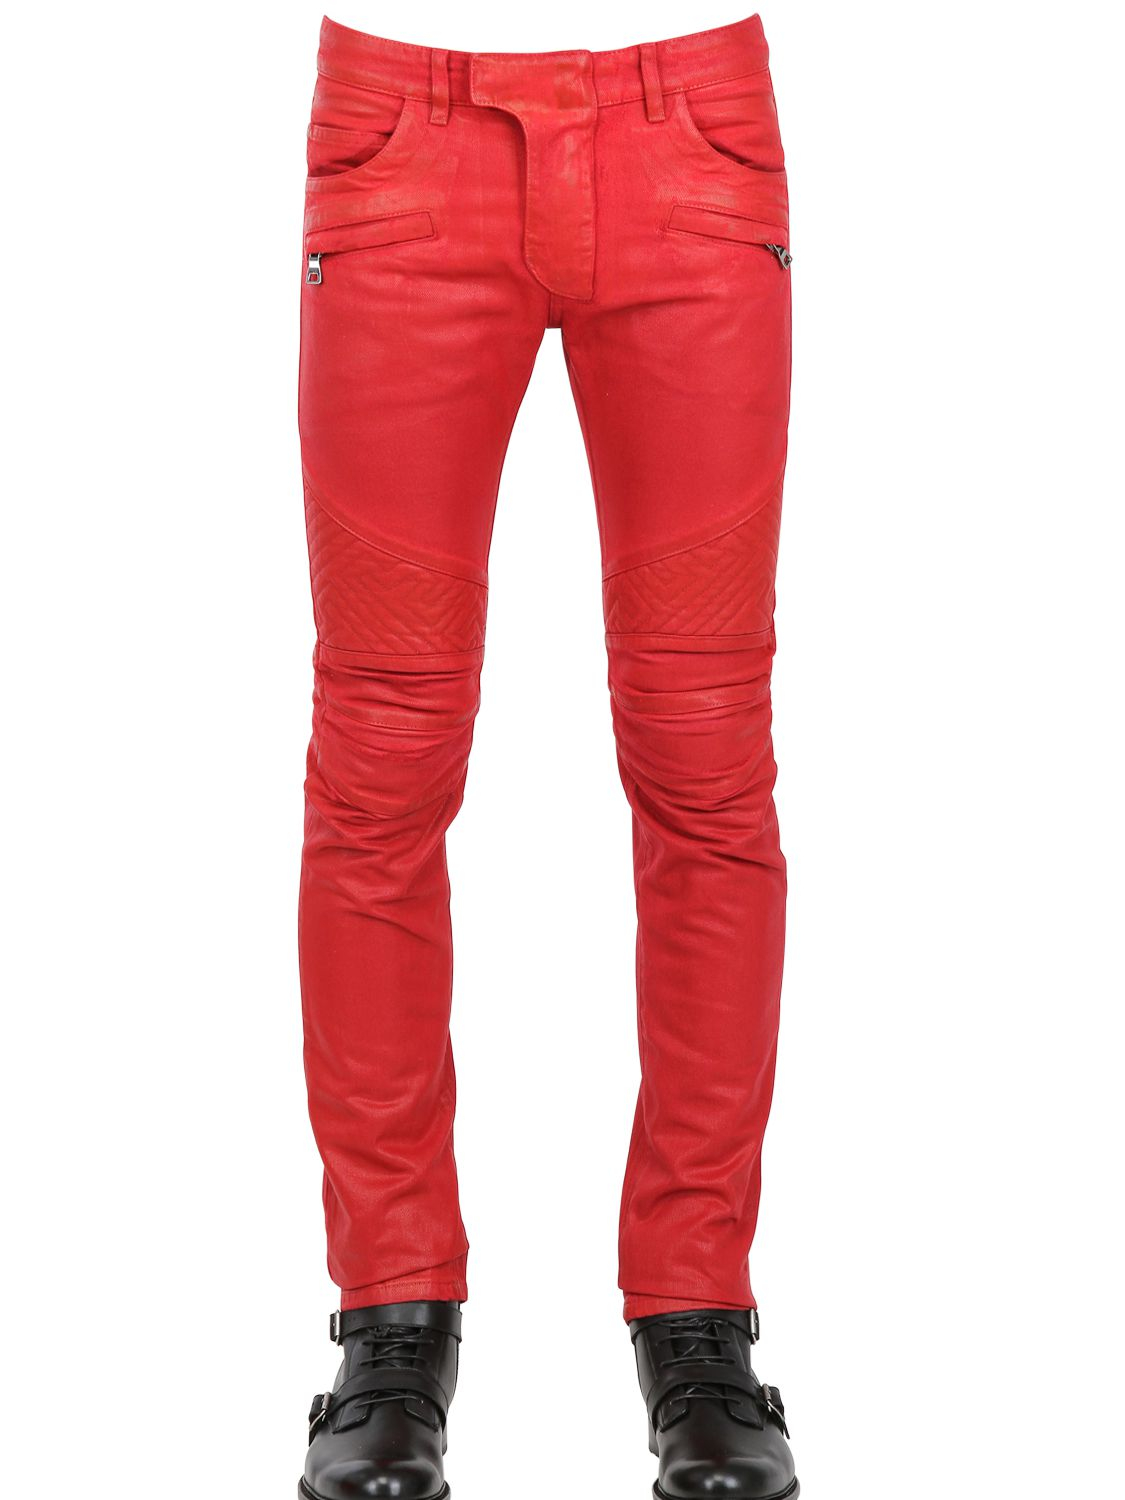 Balmain 18cm Geometric Waxed Denim Biker Jeans in Red for Men - Lyst